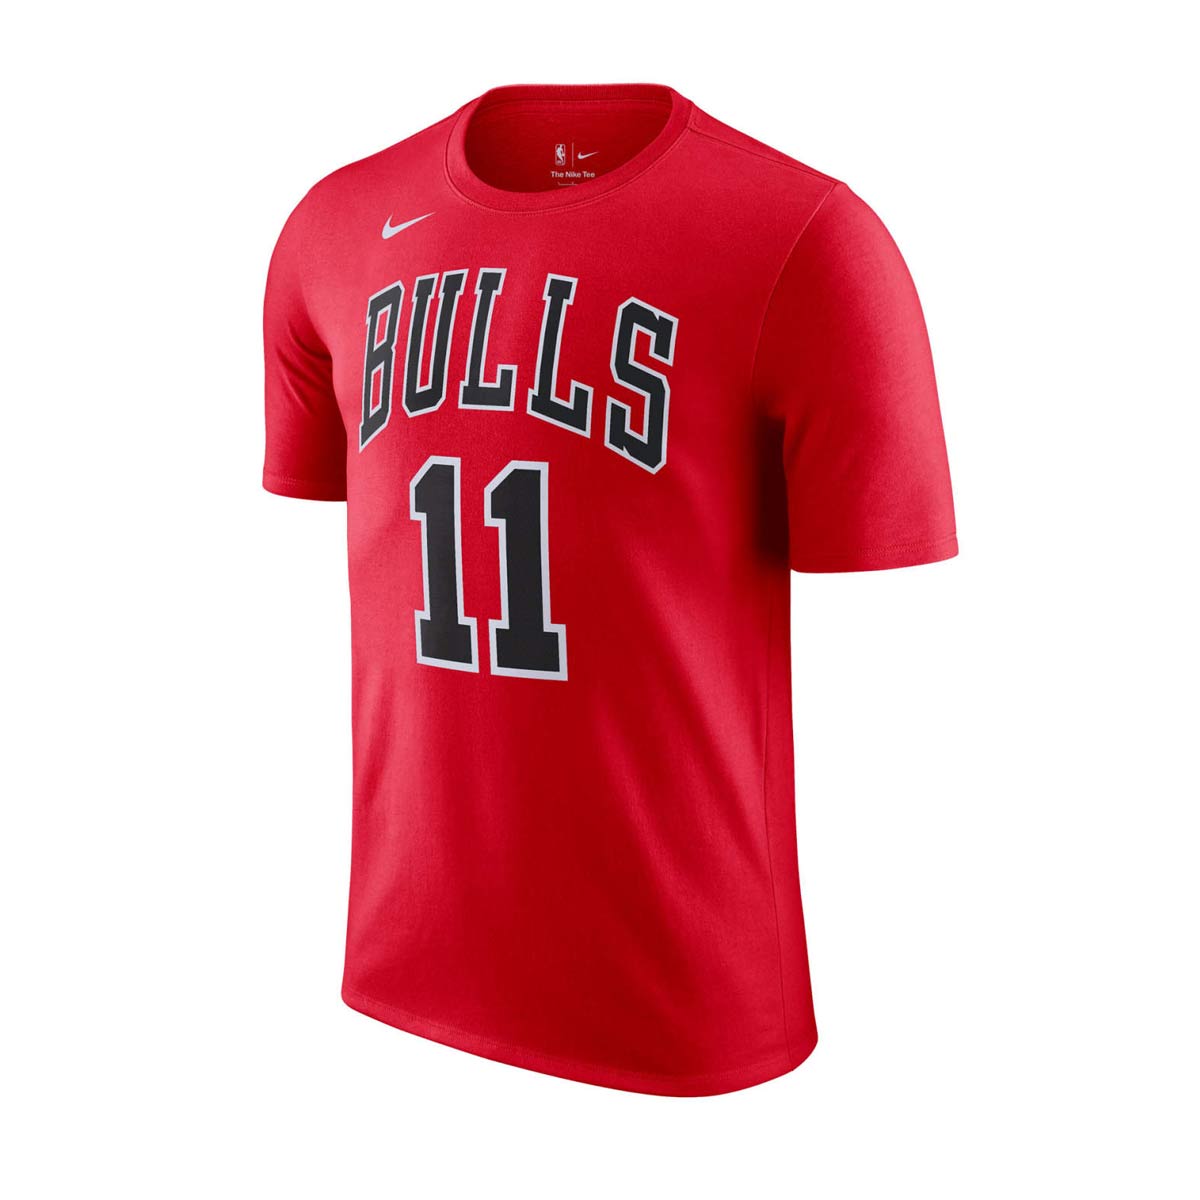 Nba Name Number Derozan Bulls T-Shirt